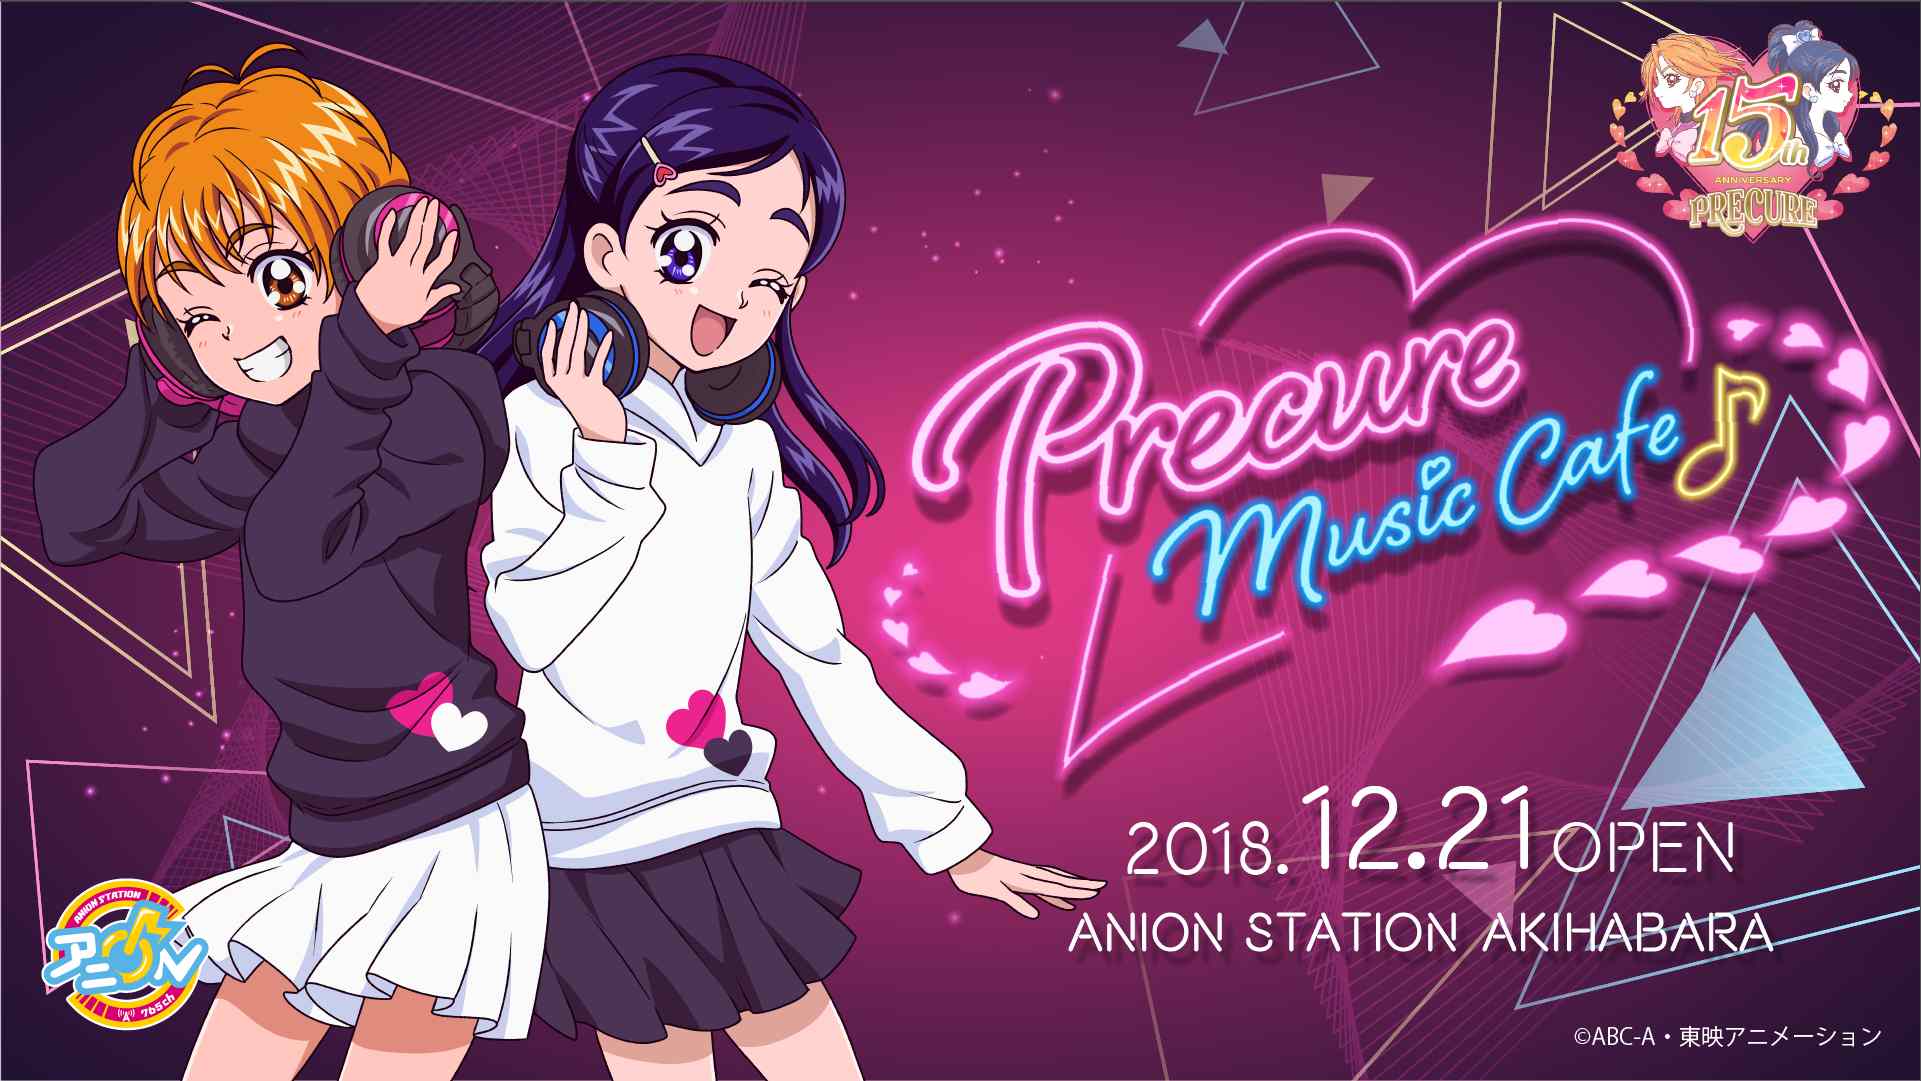 プリキュア Music Cafe × アニオン秋葉原 12.21-1.20 コラボカフェ開催!!